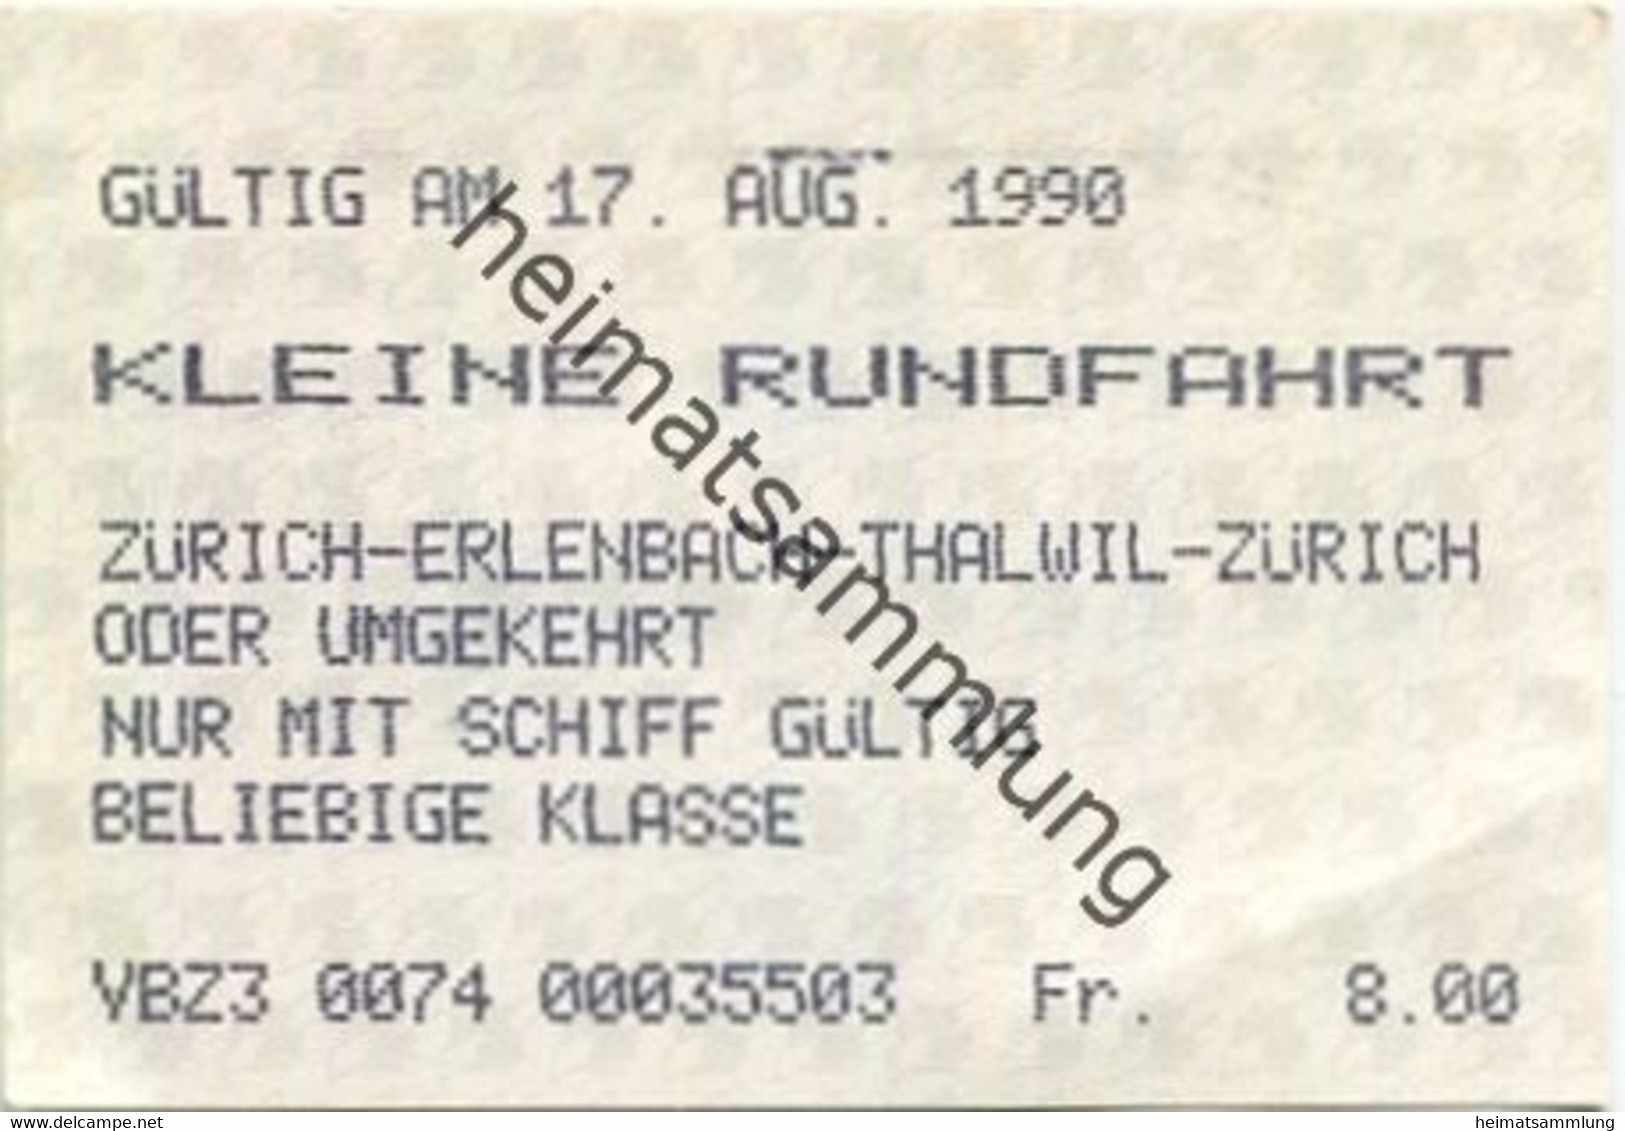 Schweiz - Zürichsee - Kleine Rundfahrt - Zürich Erlenbach Thalwil Zürich Oder Umgekehrt - Nur Mit Schiff - Fahrkarte 199 - Europe